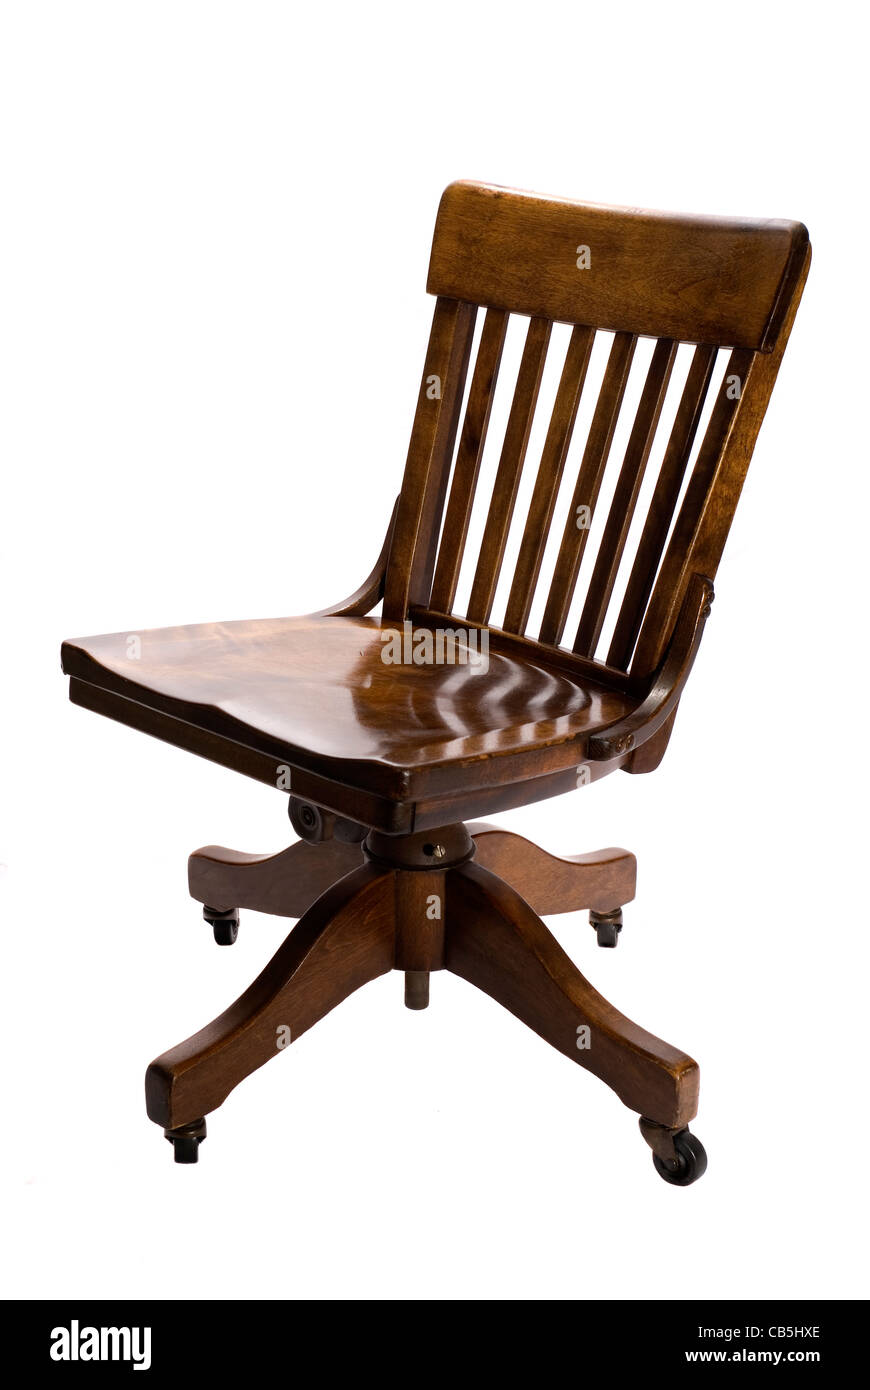 Antique oak swivel desk chair on wheels. Stock Photo